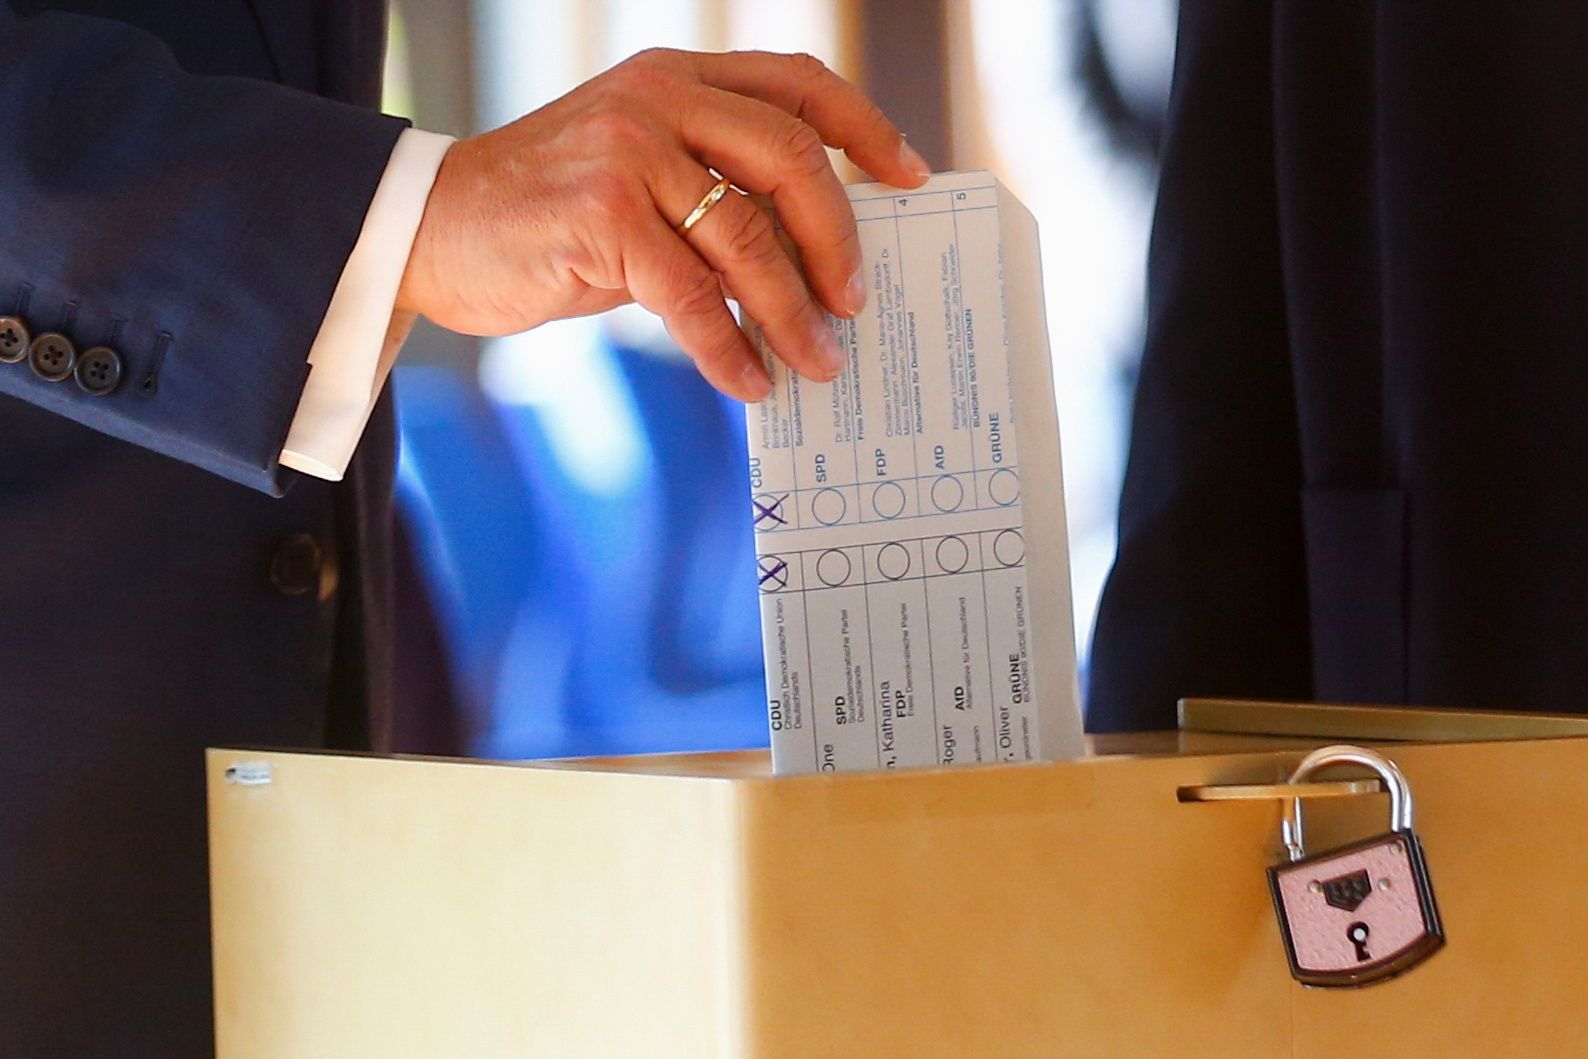 Der Vorsitzende der CDU war nachlässig.  Er hat die Stimmzettel nicht vertuscht und gegen die Wahlregeln verstoßen